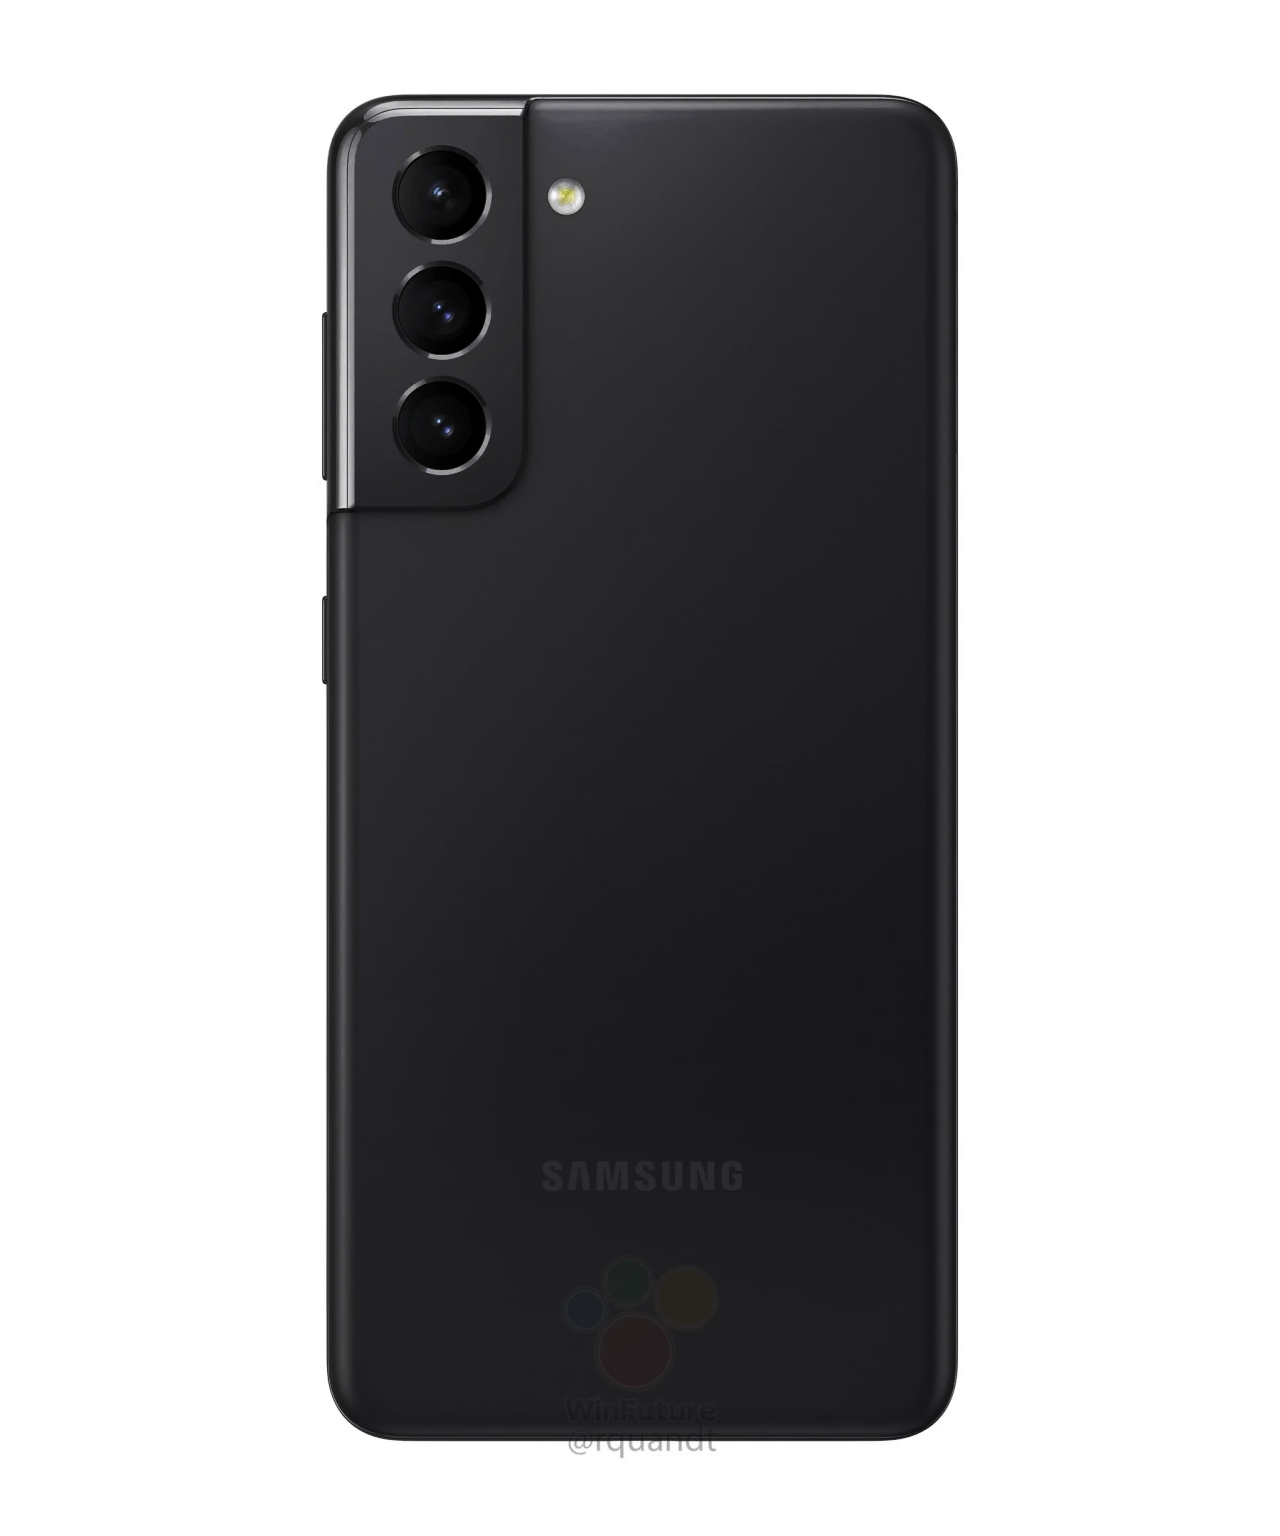 Samsung Galaxy S21 và S21 Plus được tiết lộ thông số kỹ thuật và thiết kế